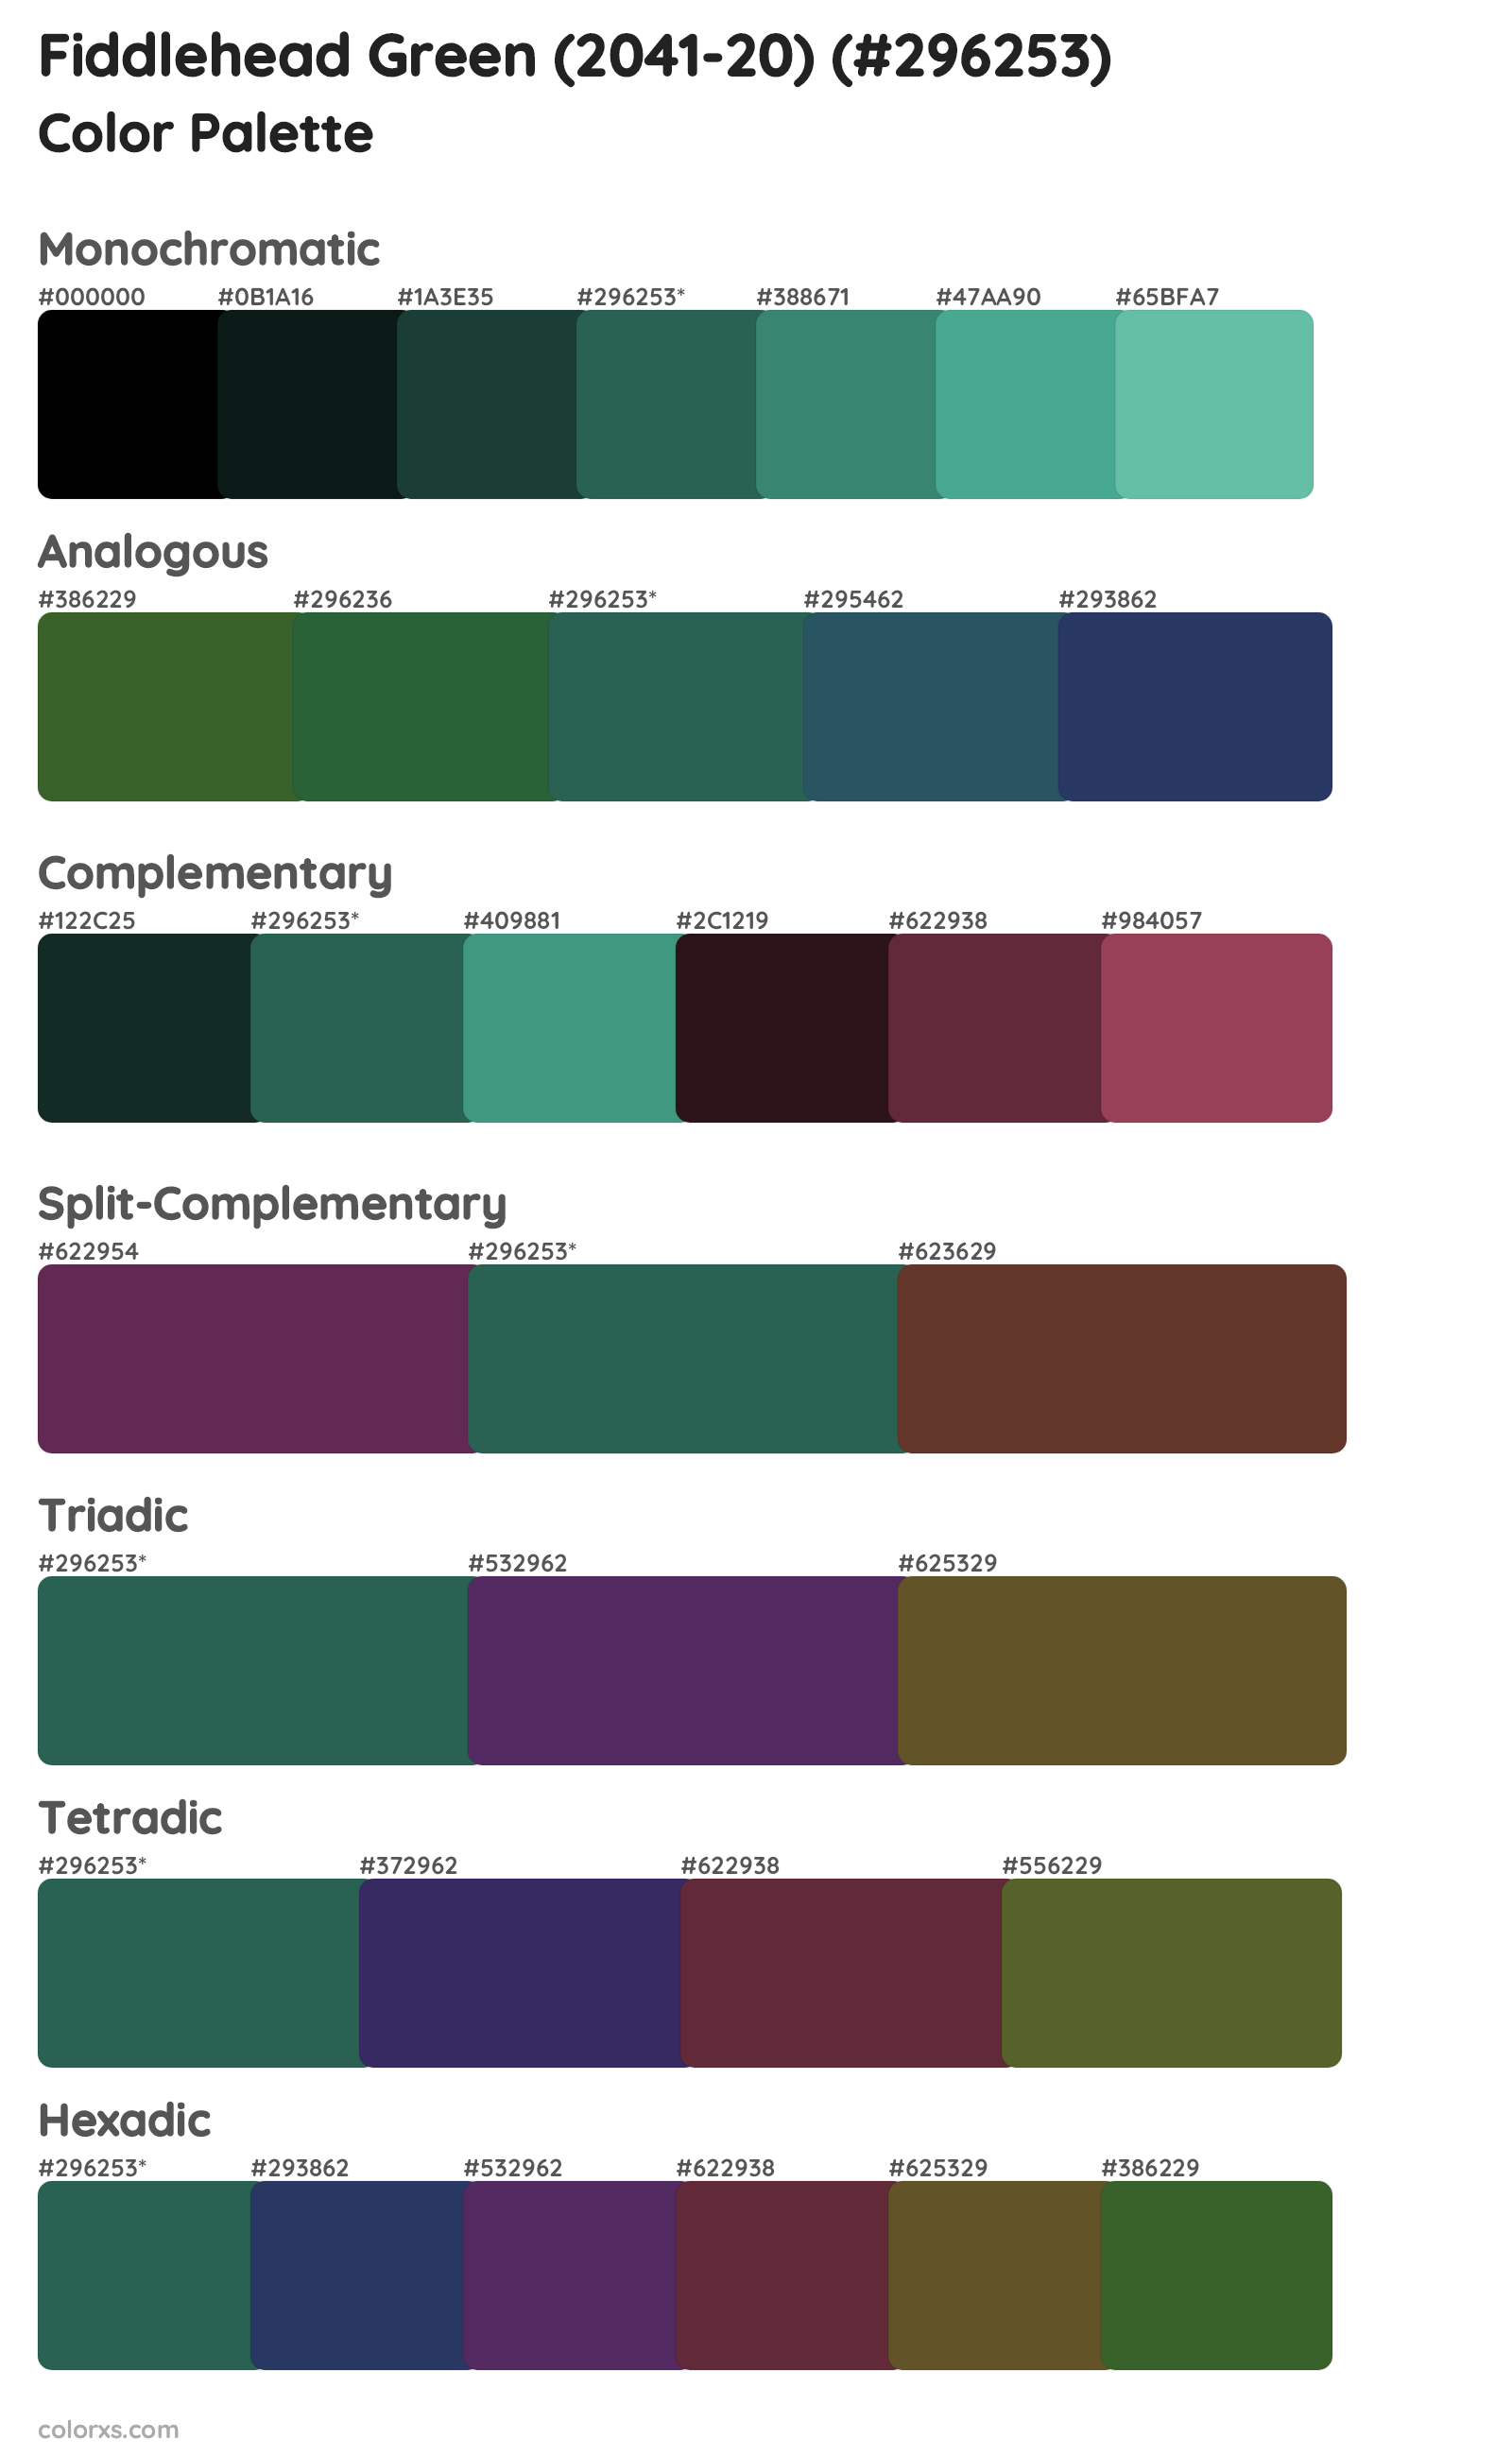 Fiddlehead Green (2041-20) Color Scheme Palettes